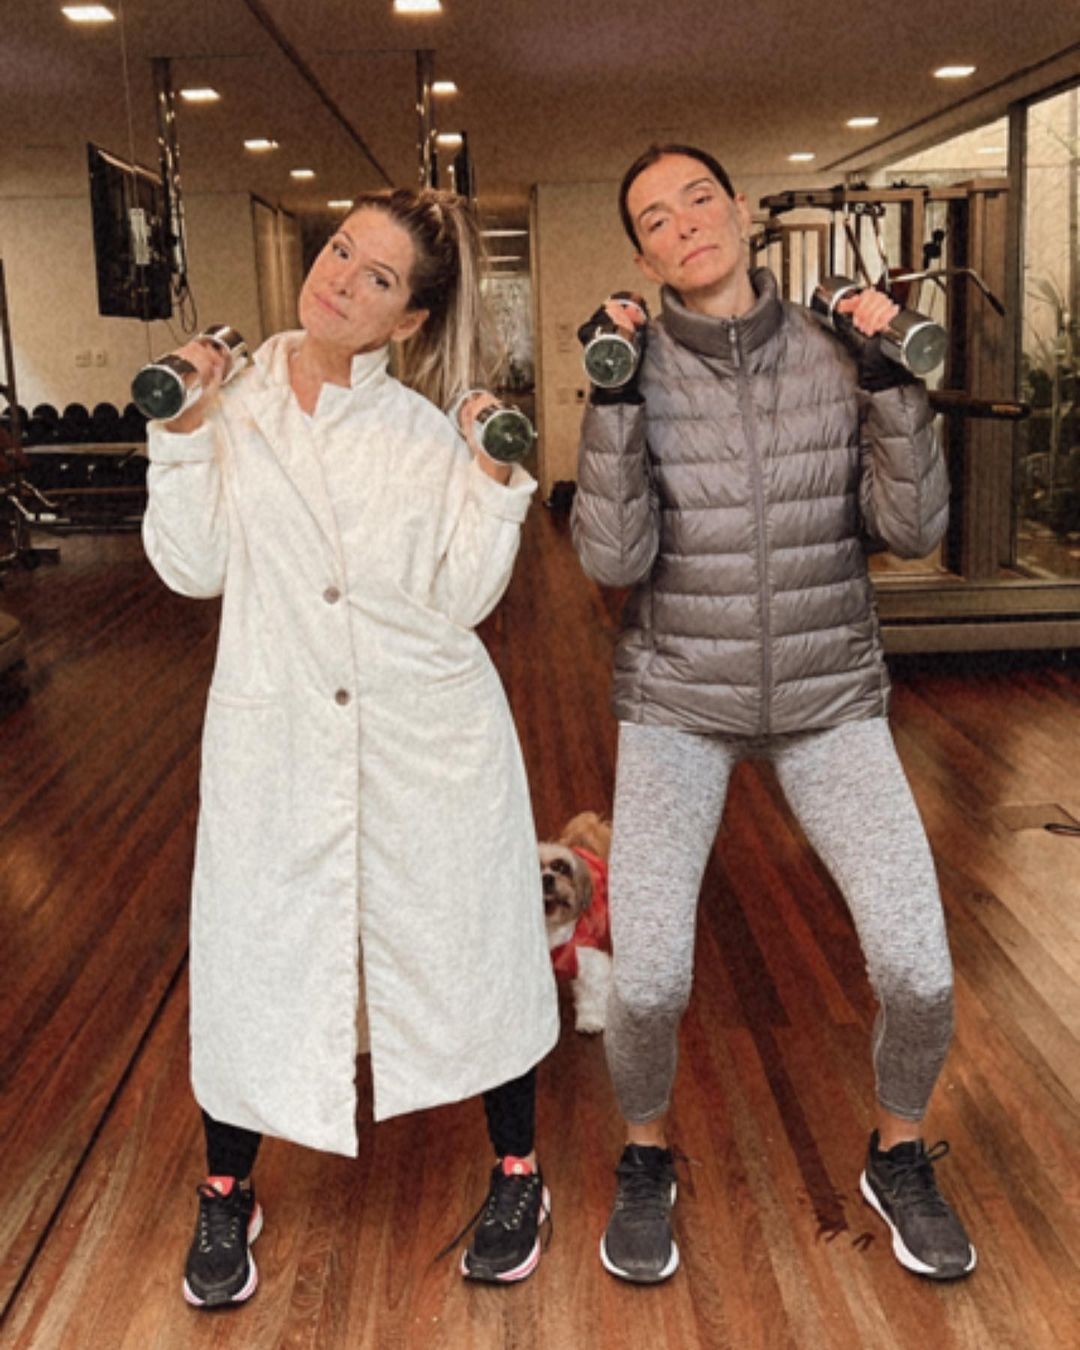 Ingrid Guimarães e Mônica Martelli posam de casaco na academia: 'frio com dignidade' (Foto: reprodução/instagram)